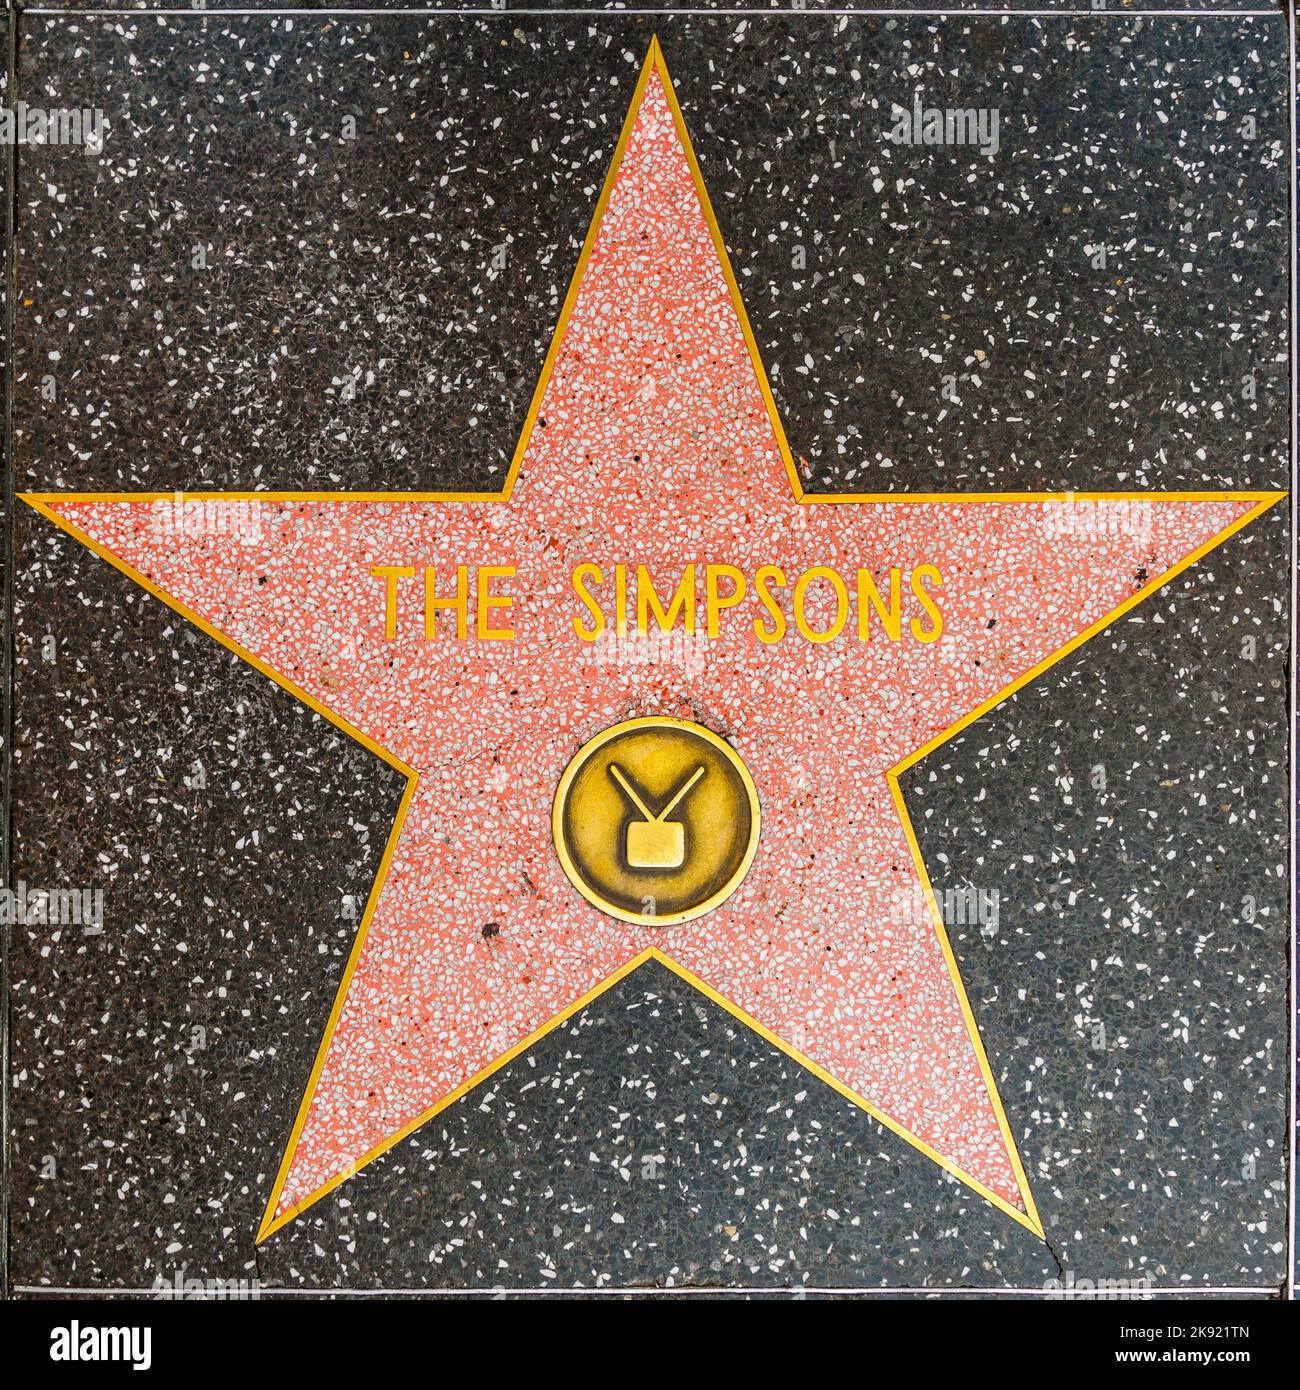 Los Angeles, USA - 24. Juni 2012: The Simpsons Star auf dem Hollywood Walk of Fame in Hollywood, Kalifornien. Dieses Hotel liegt am Hollywood Blvd. Und ist es auch Stockfoto